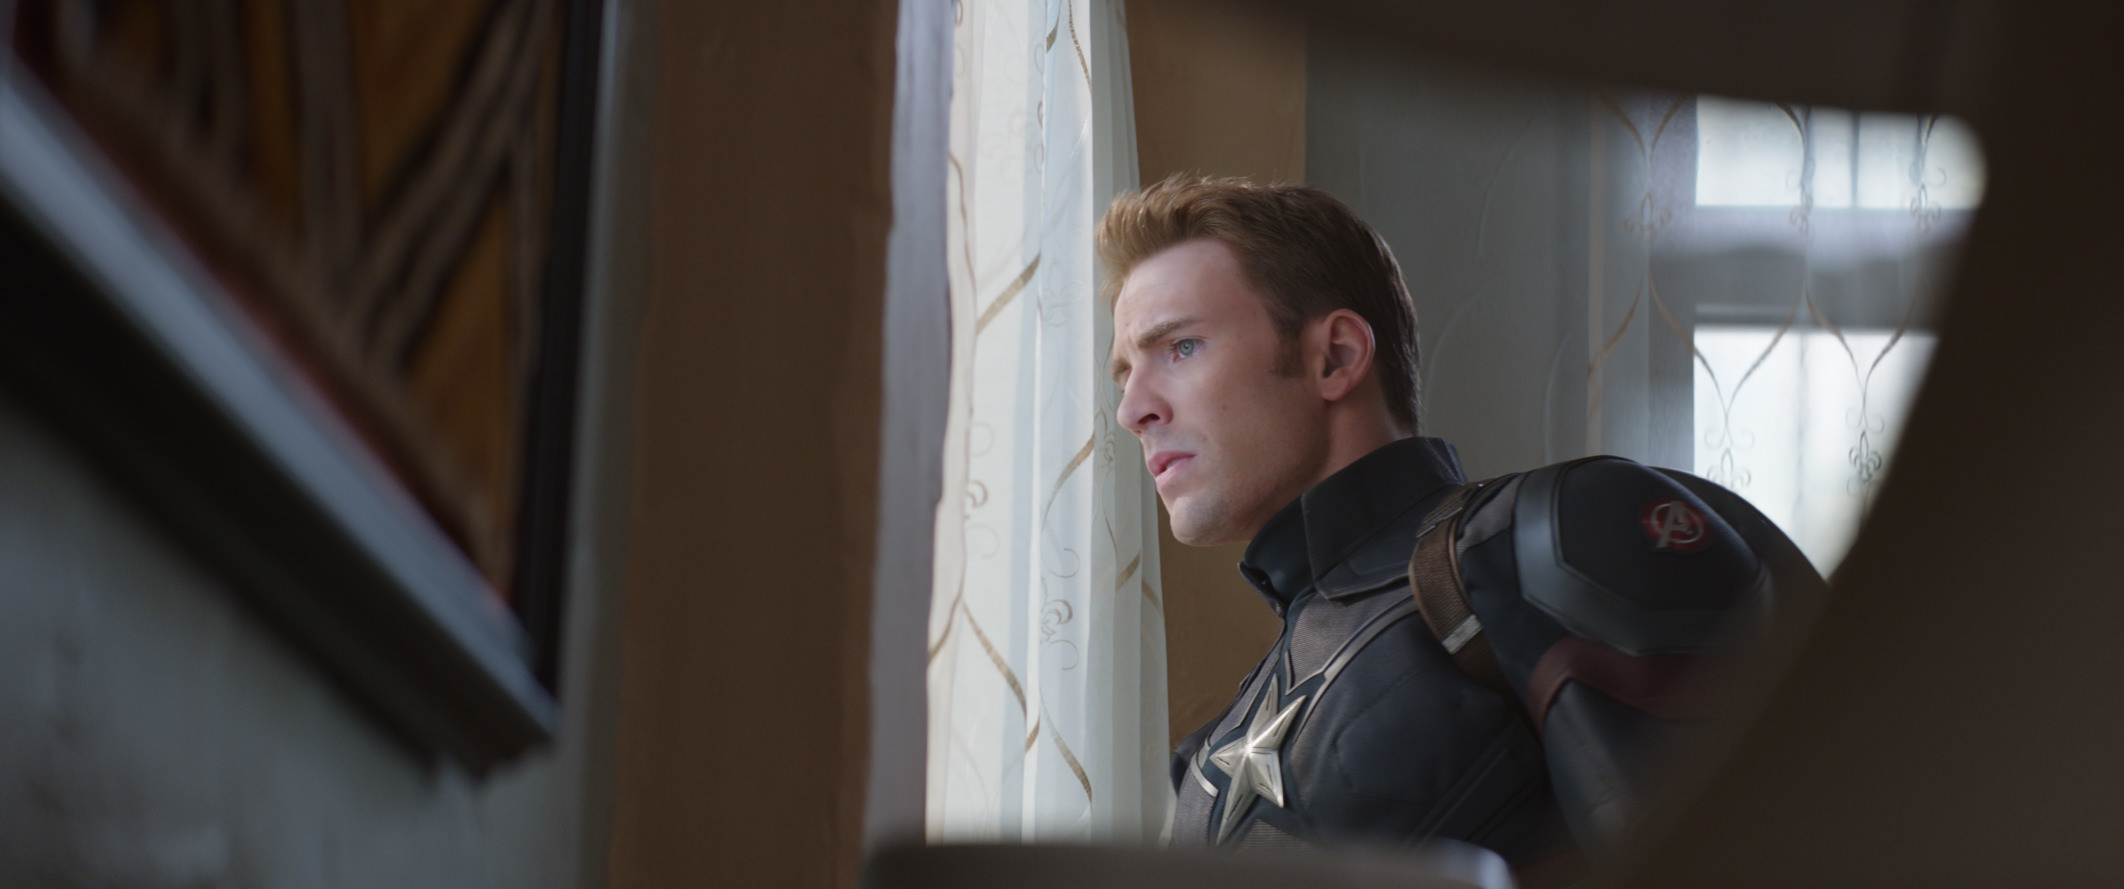 Marvel's Captain America: Civil War..Captain America/Steve Rogers (Chris Evans)..Photo Credit: Film Frame..© Marvel 2016